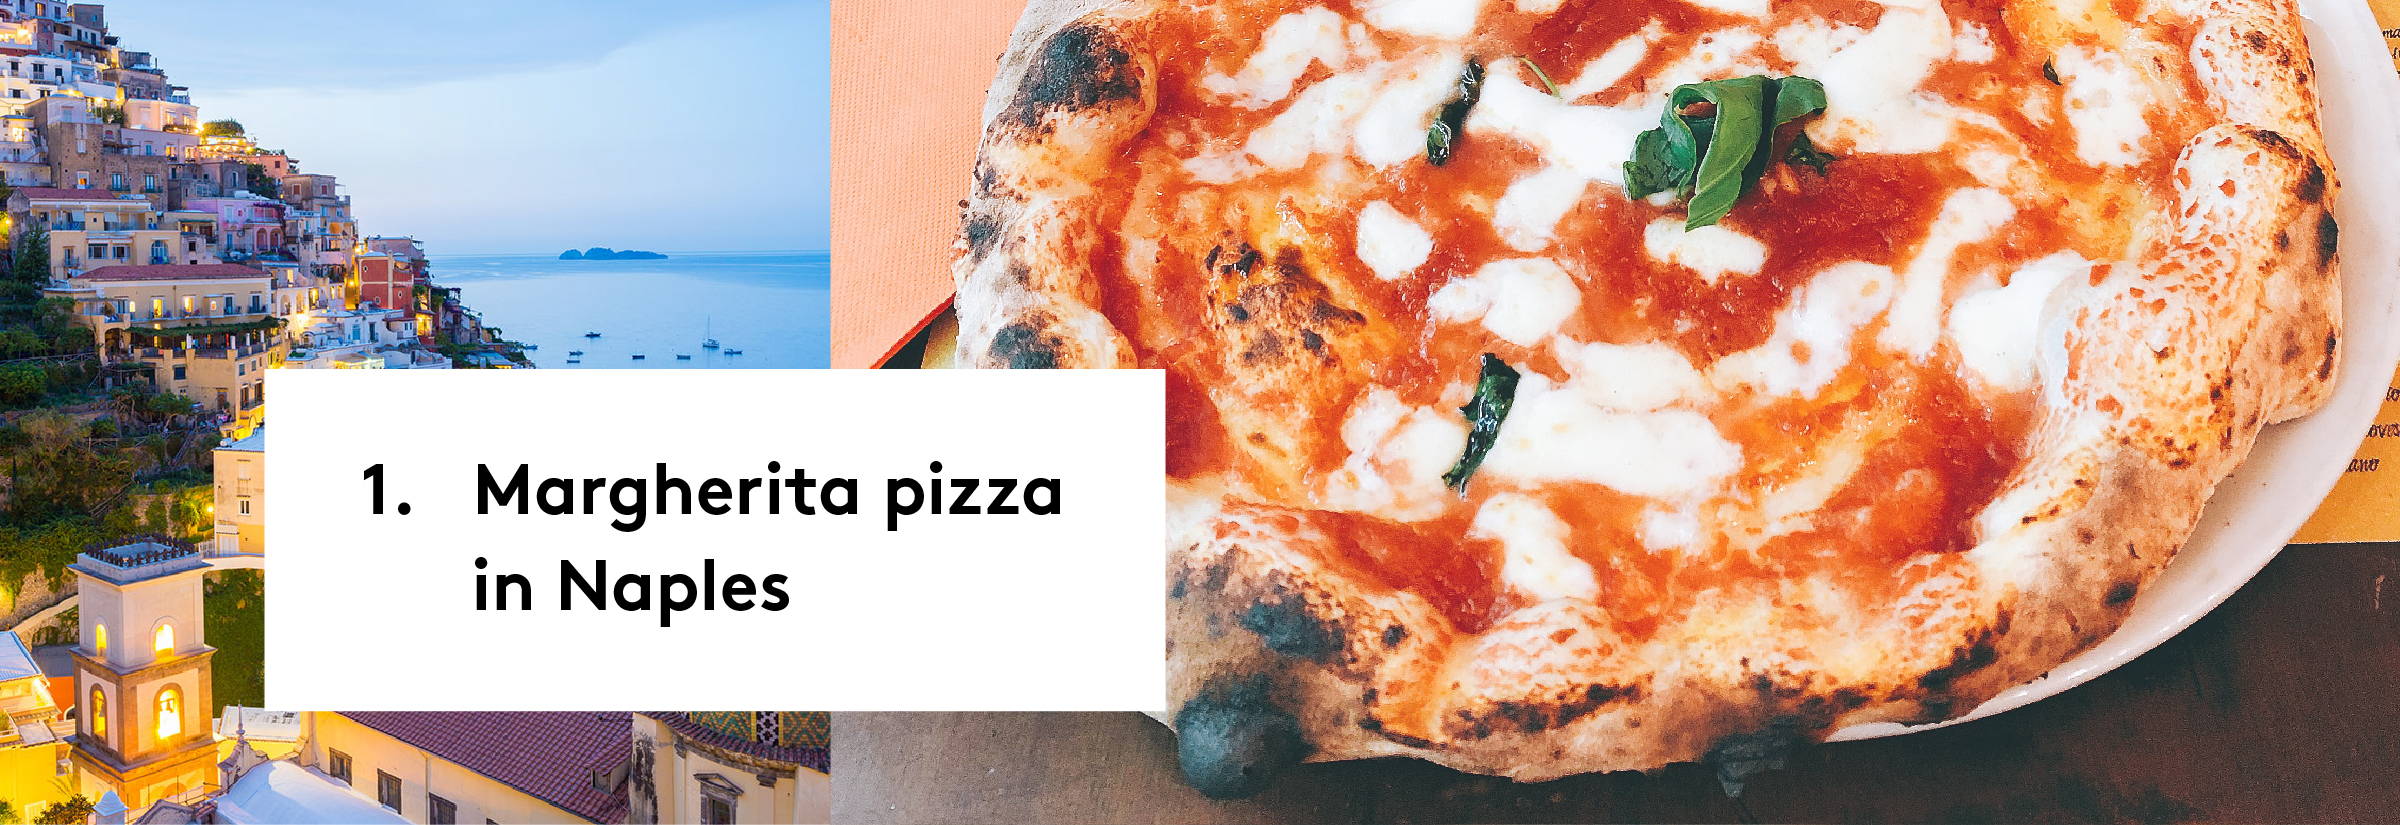 1. Margherita pizza in Naples